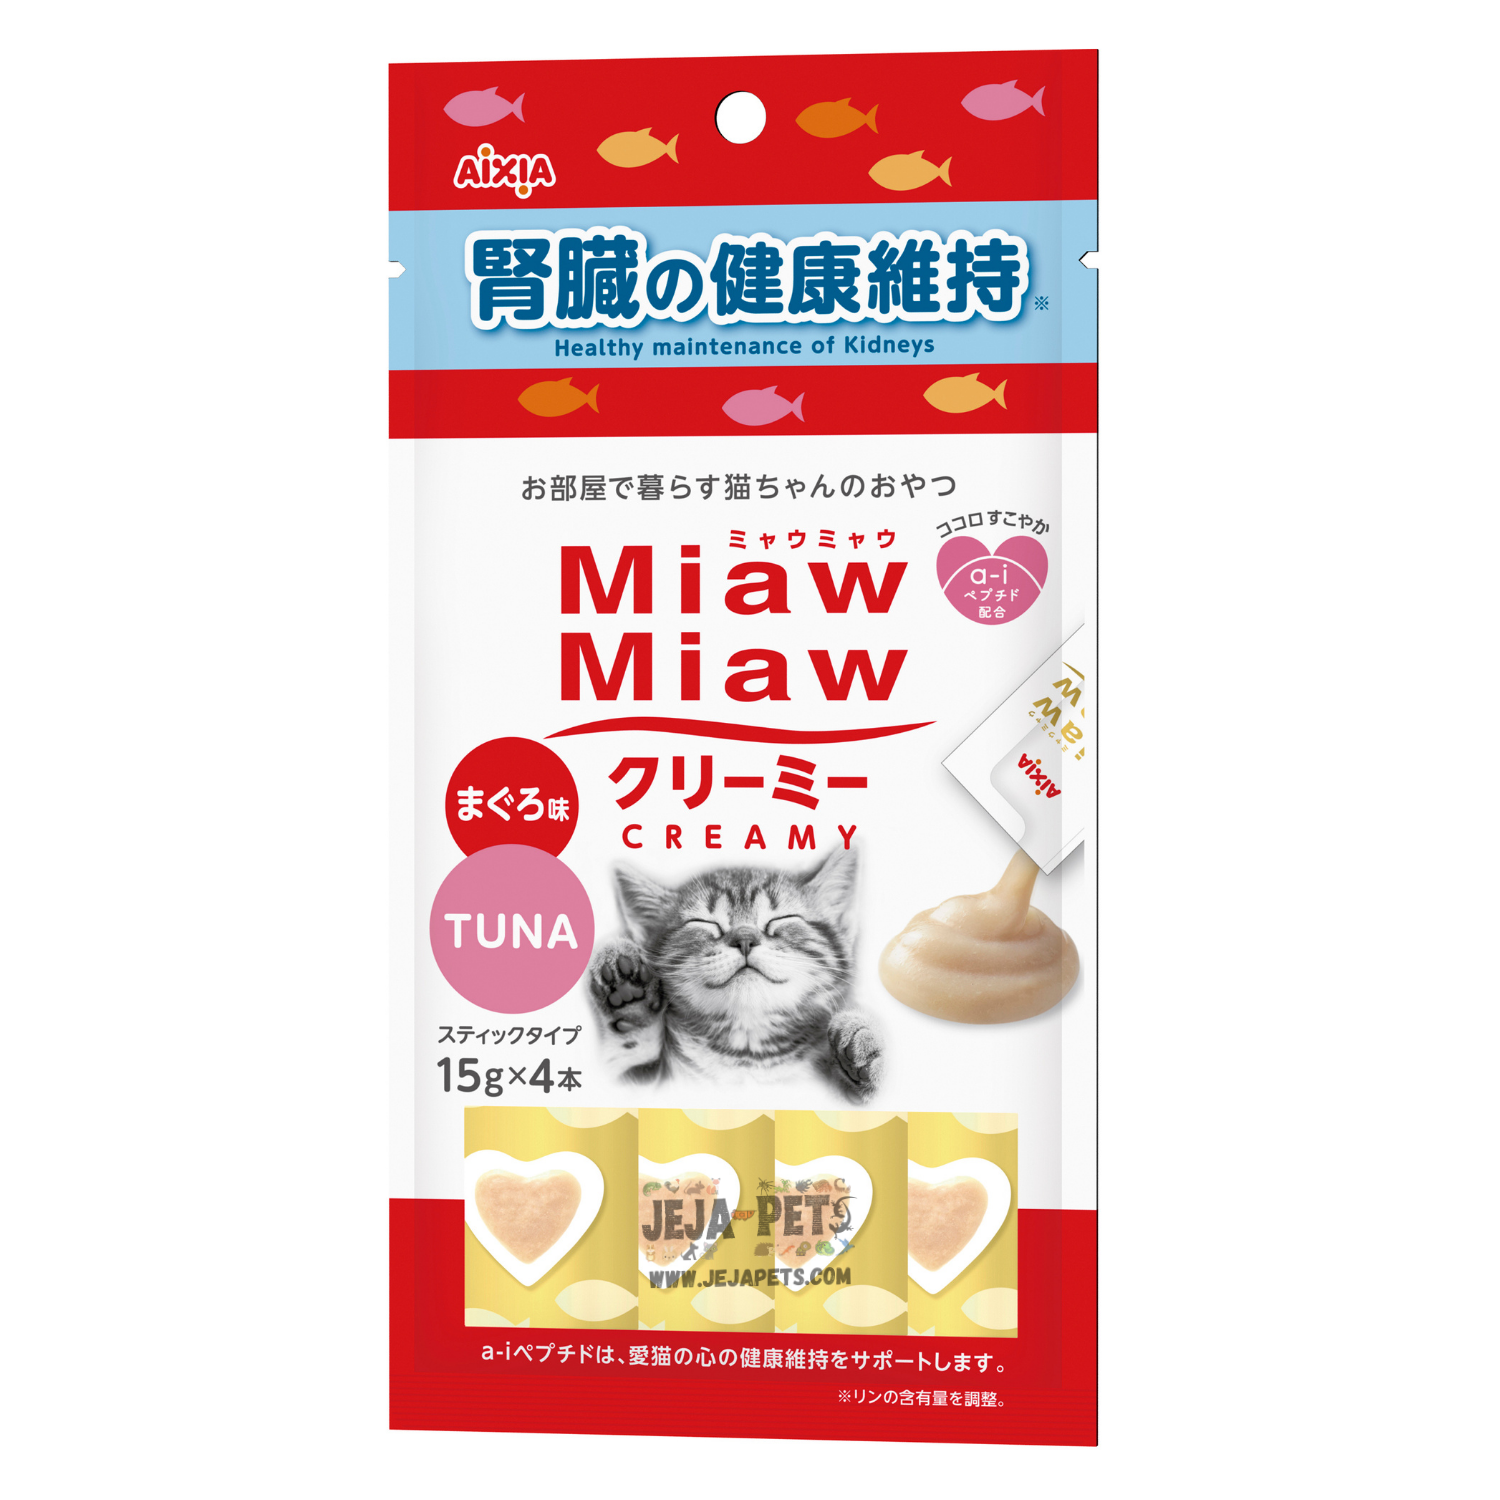 Aixia Miaw Miaw Creamy (Kidney Maintenance) - 15g x 4